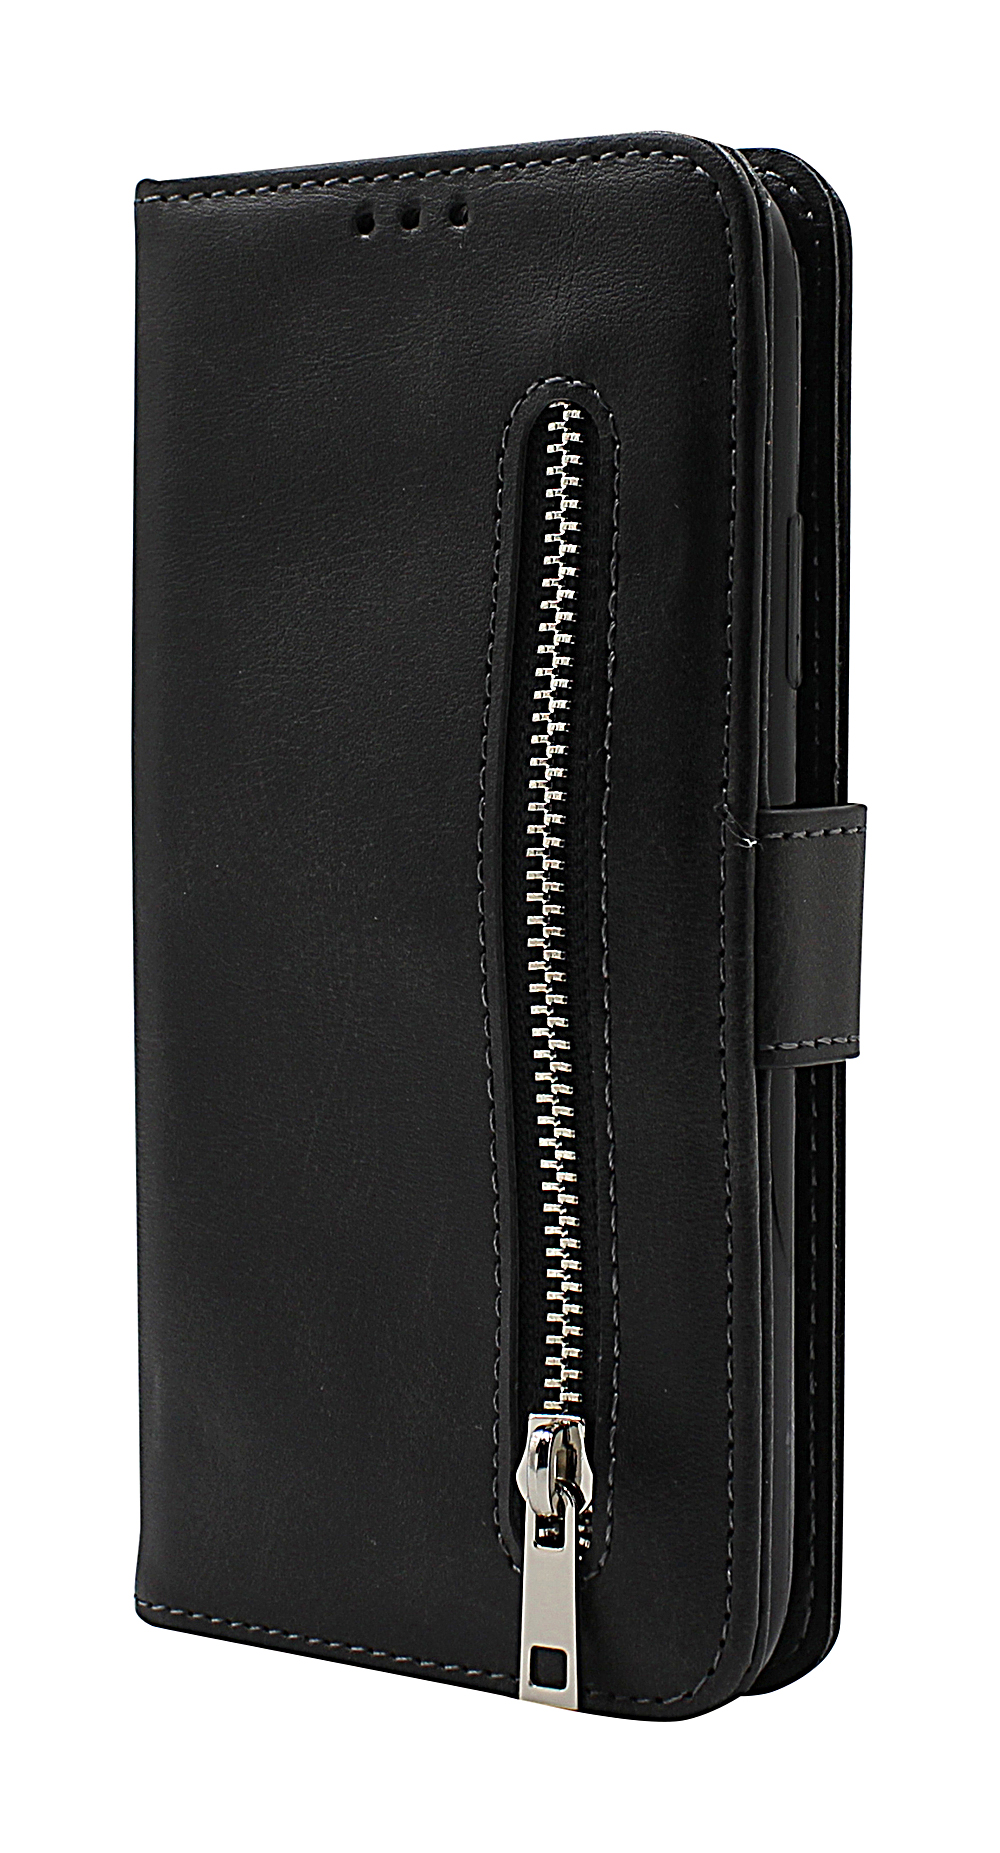 Zipper Standcase Wallet iPhone 14 (6.1)